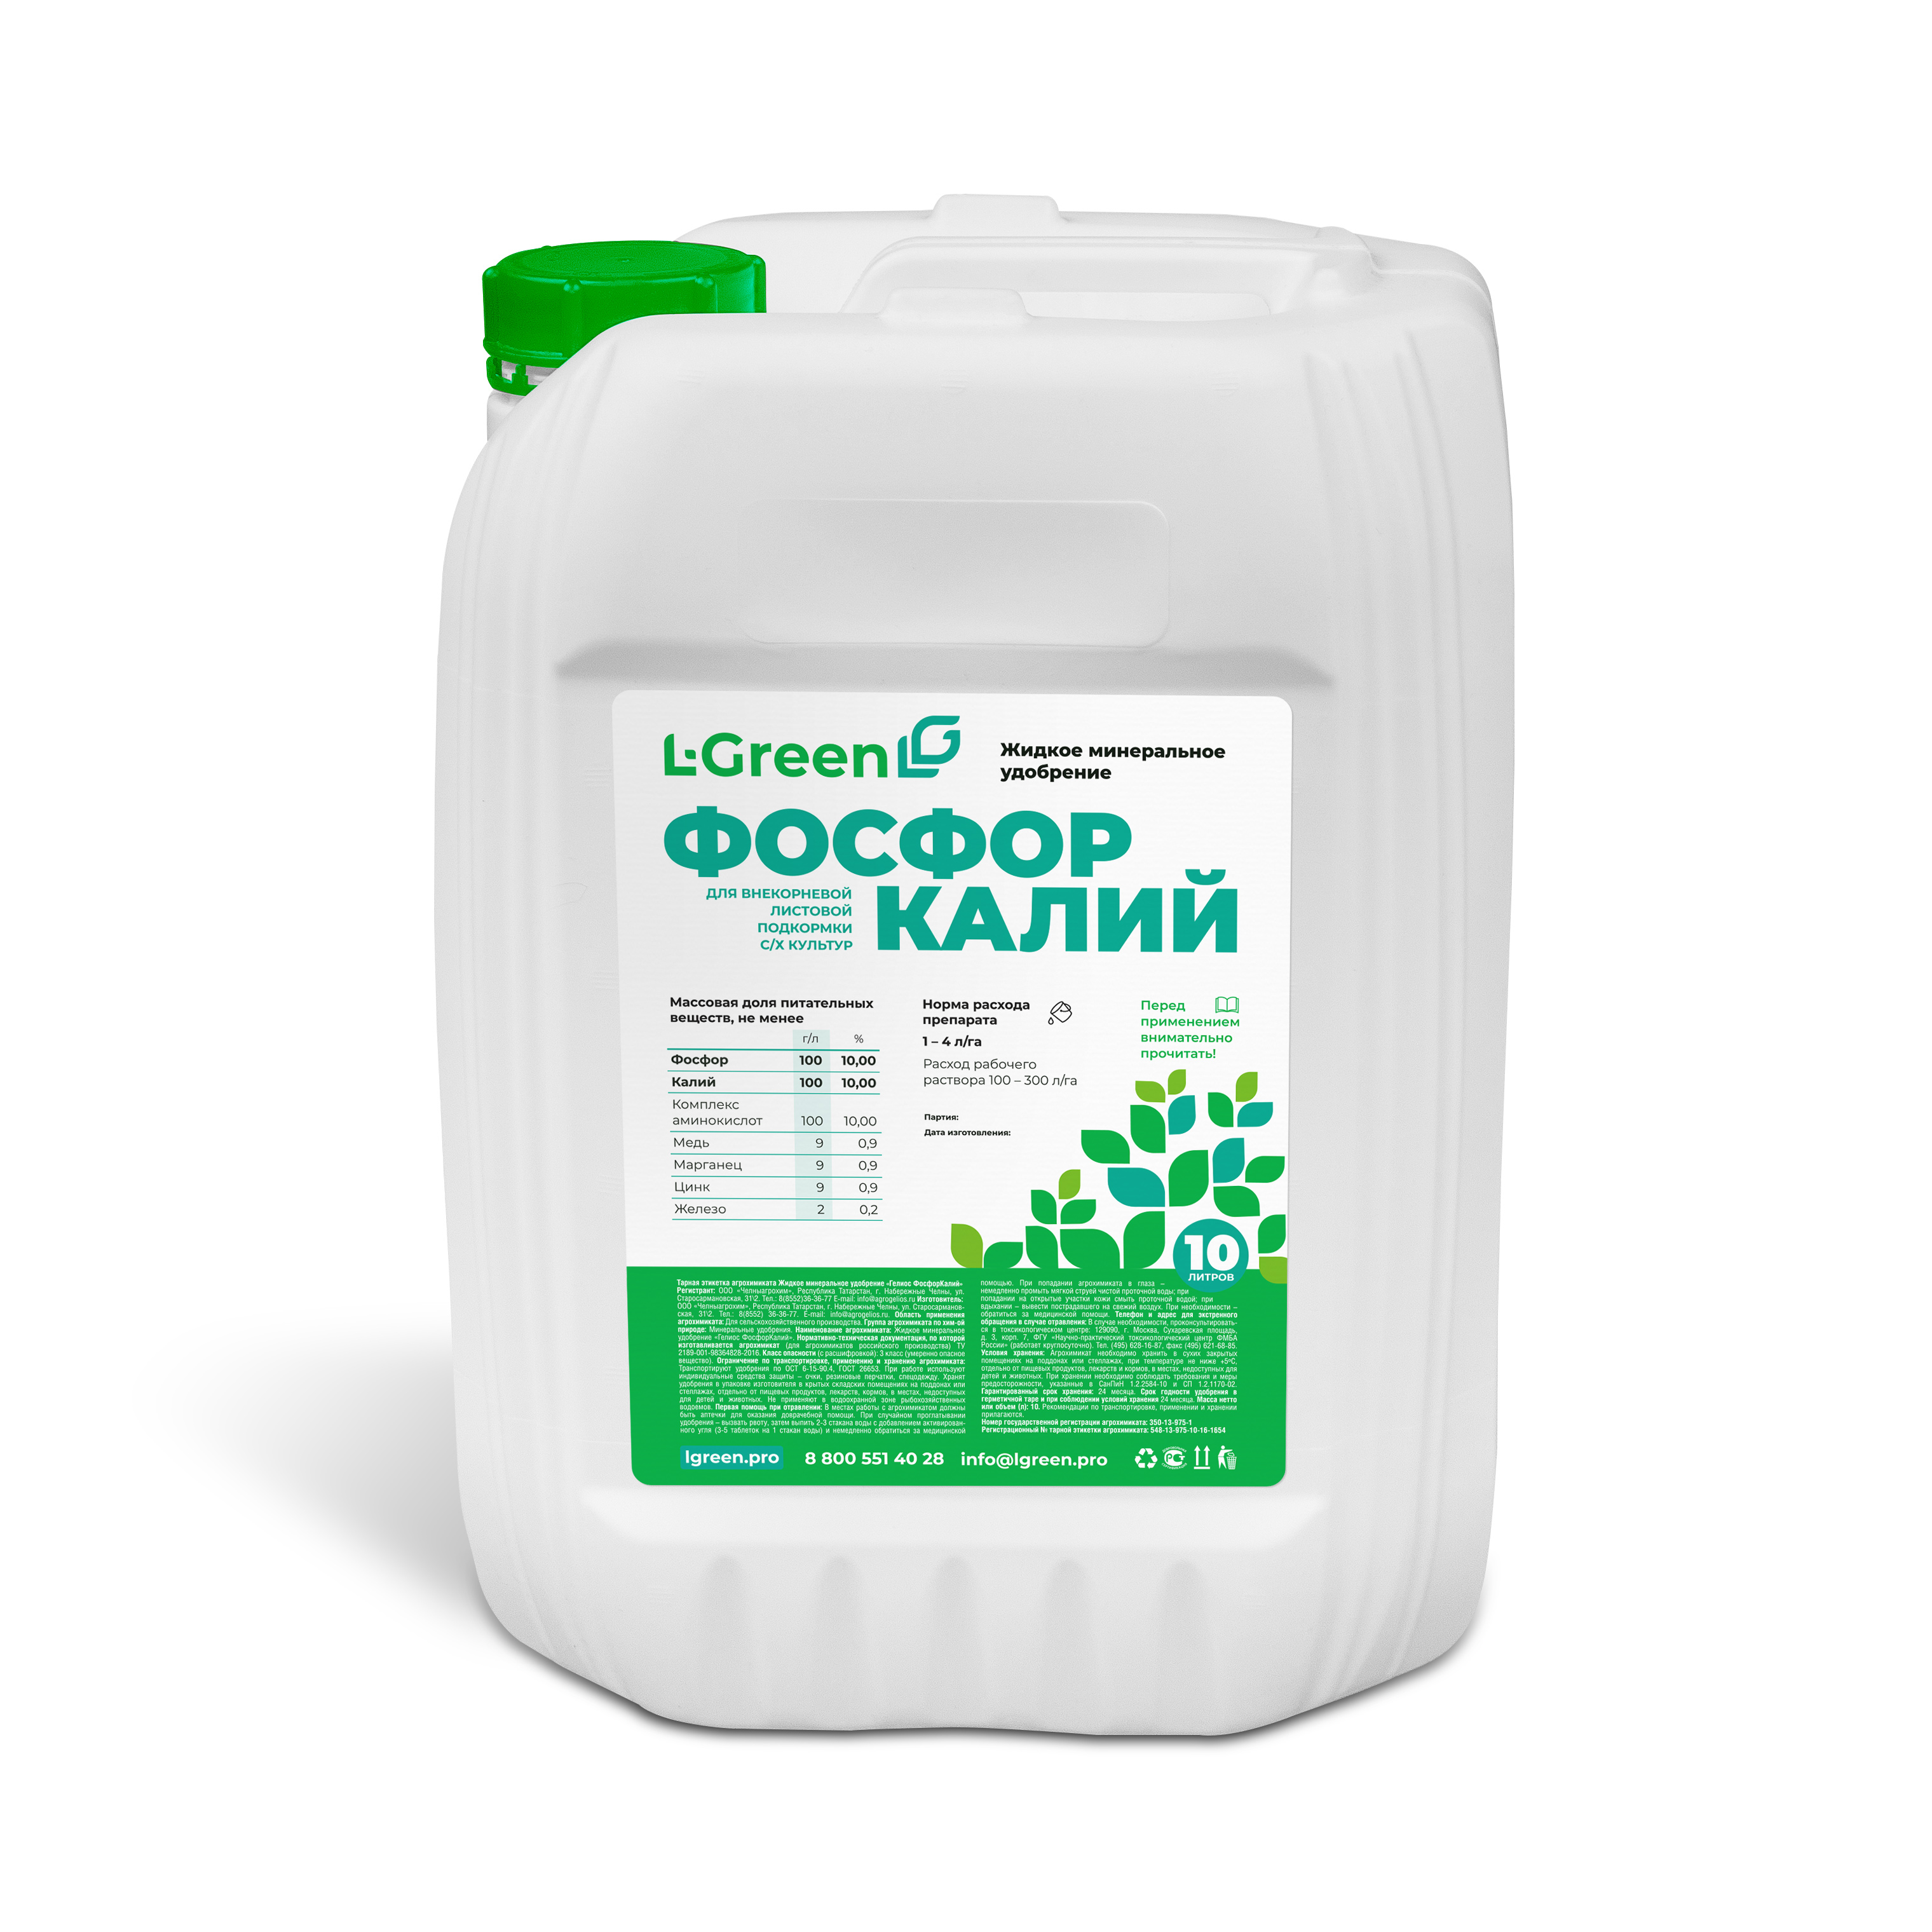 L-Green Фосфор Калий